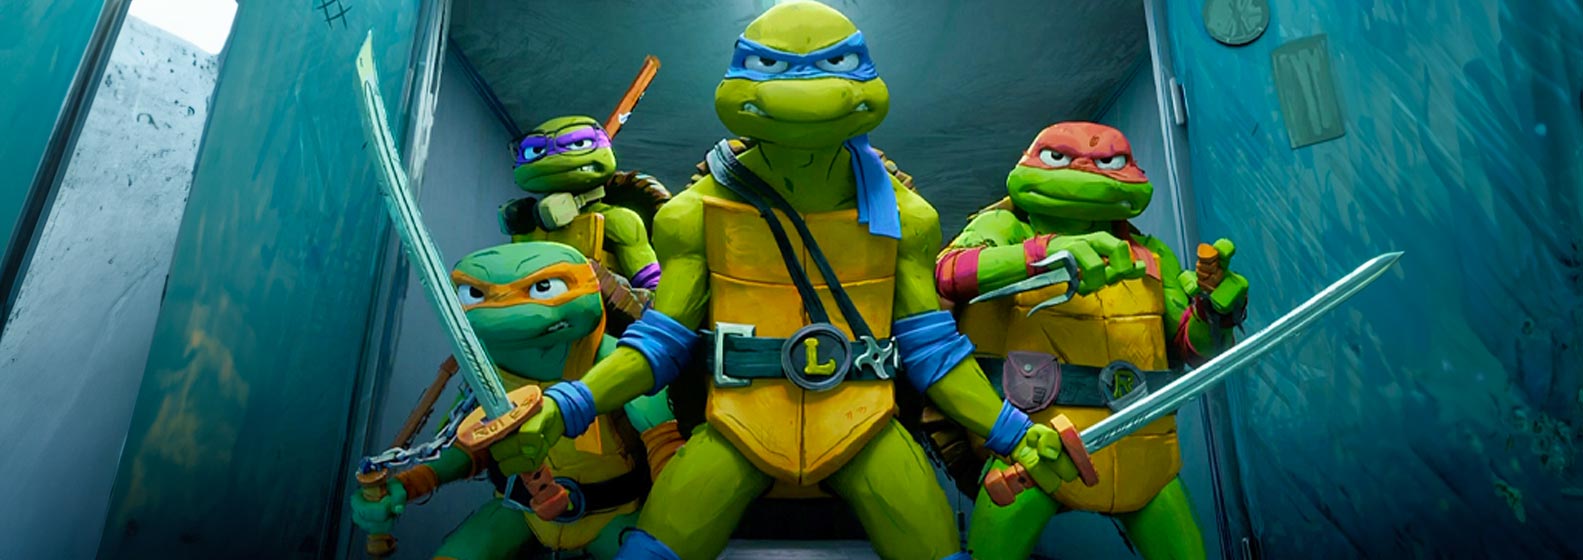 Teenage Mutant Ninja Turtles: Mutant Mayhem - Header Image